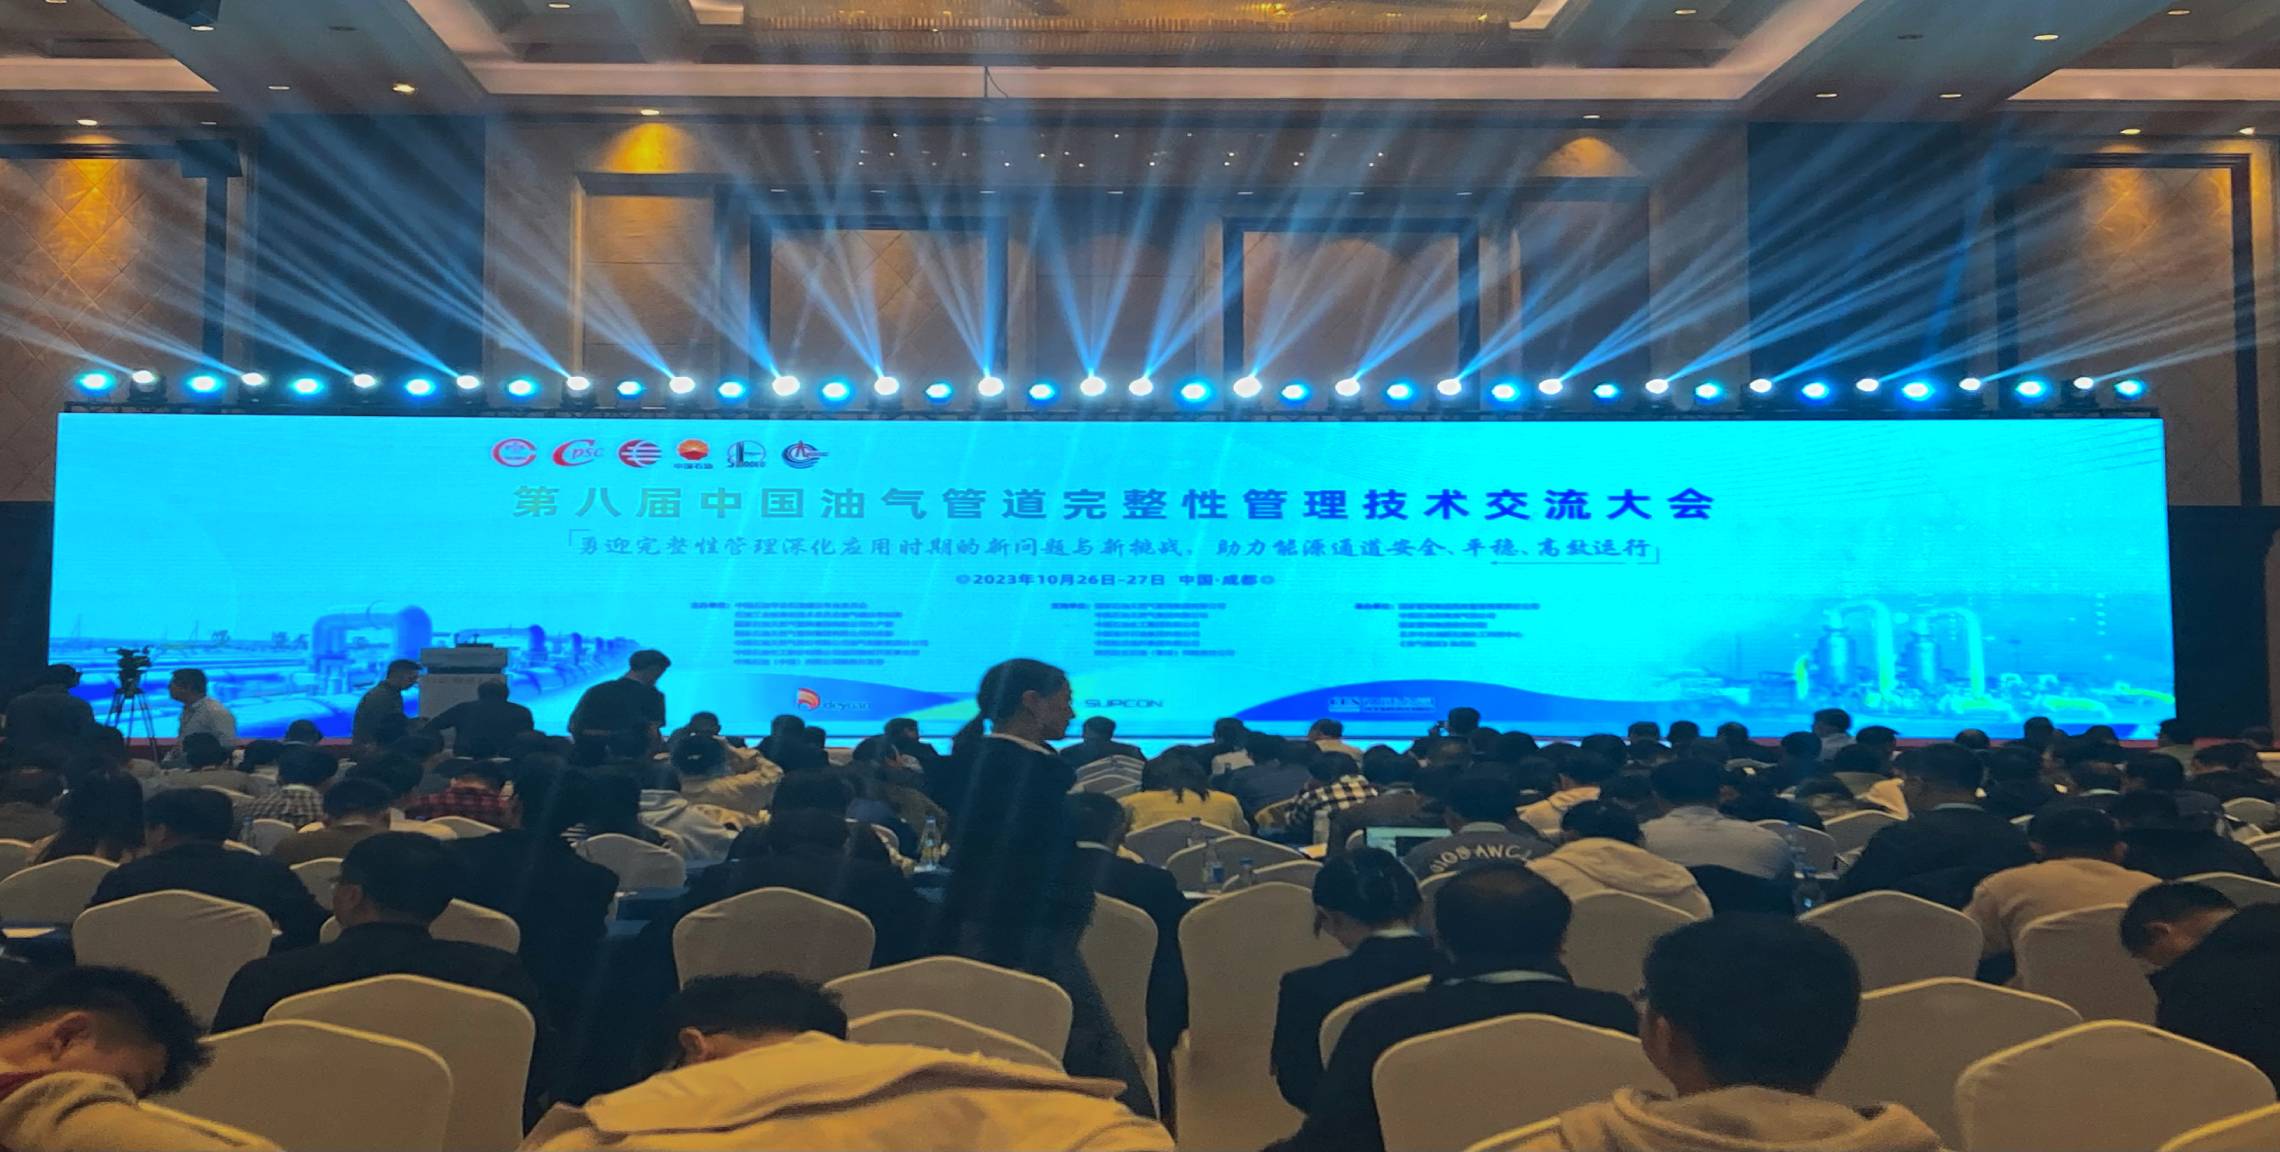 会议邀请 | 杜克泰克邀您共聚第八届中国油气管道完整性管理技术交流大会